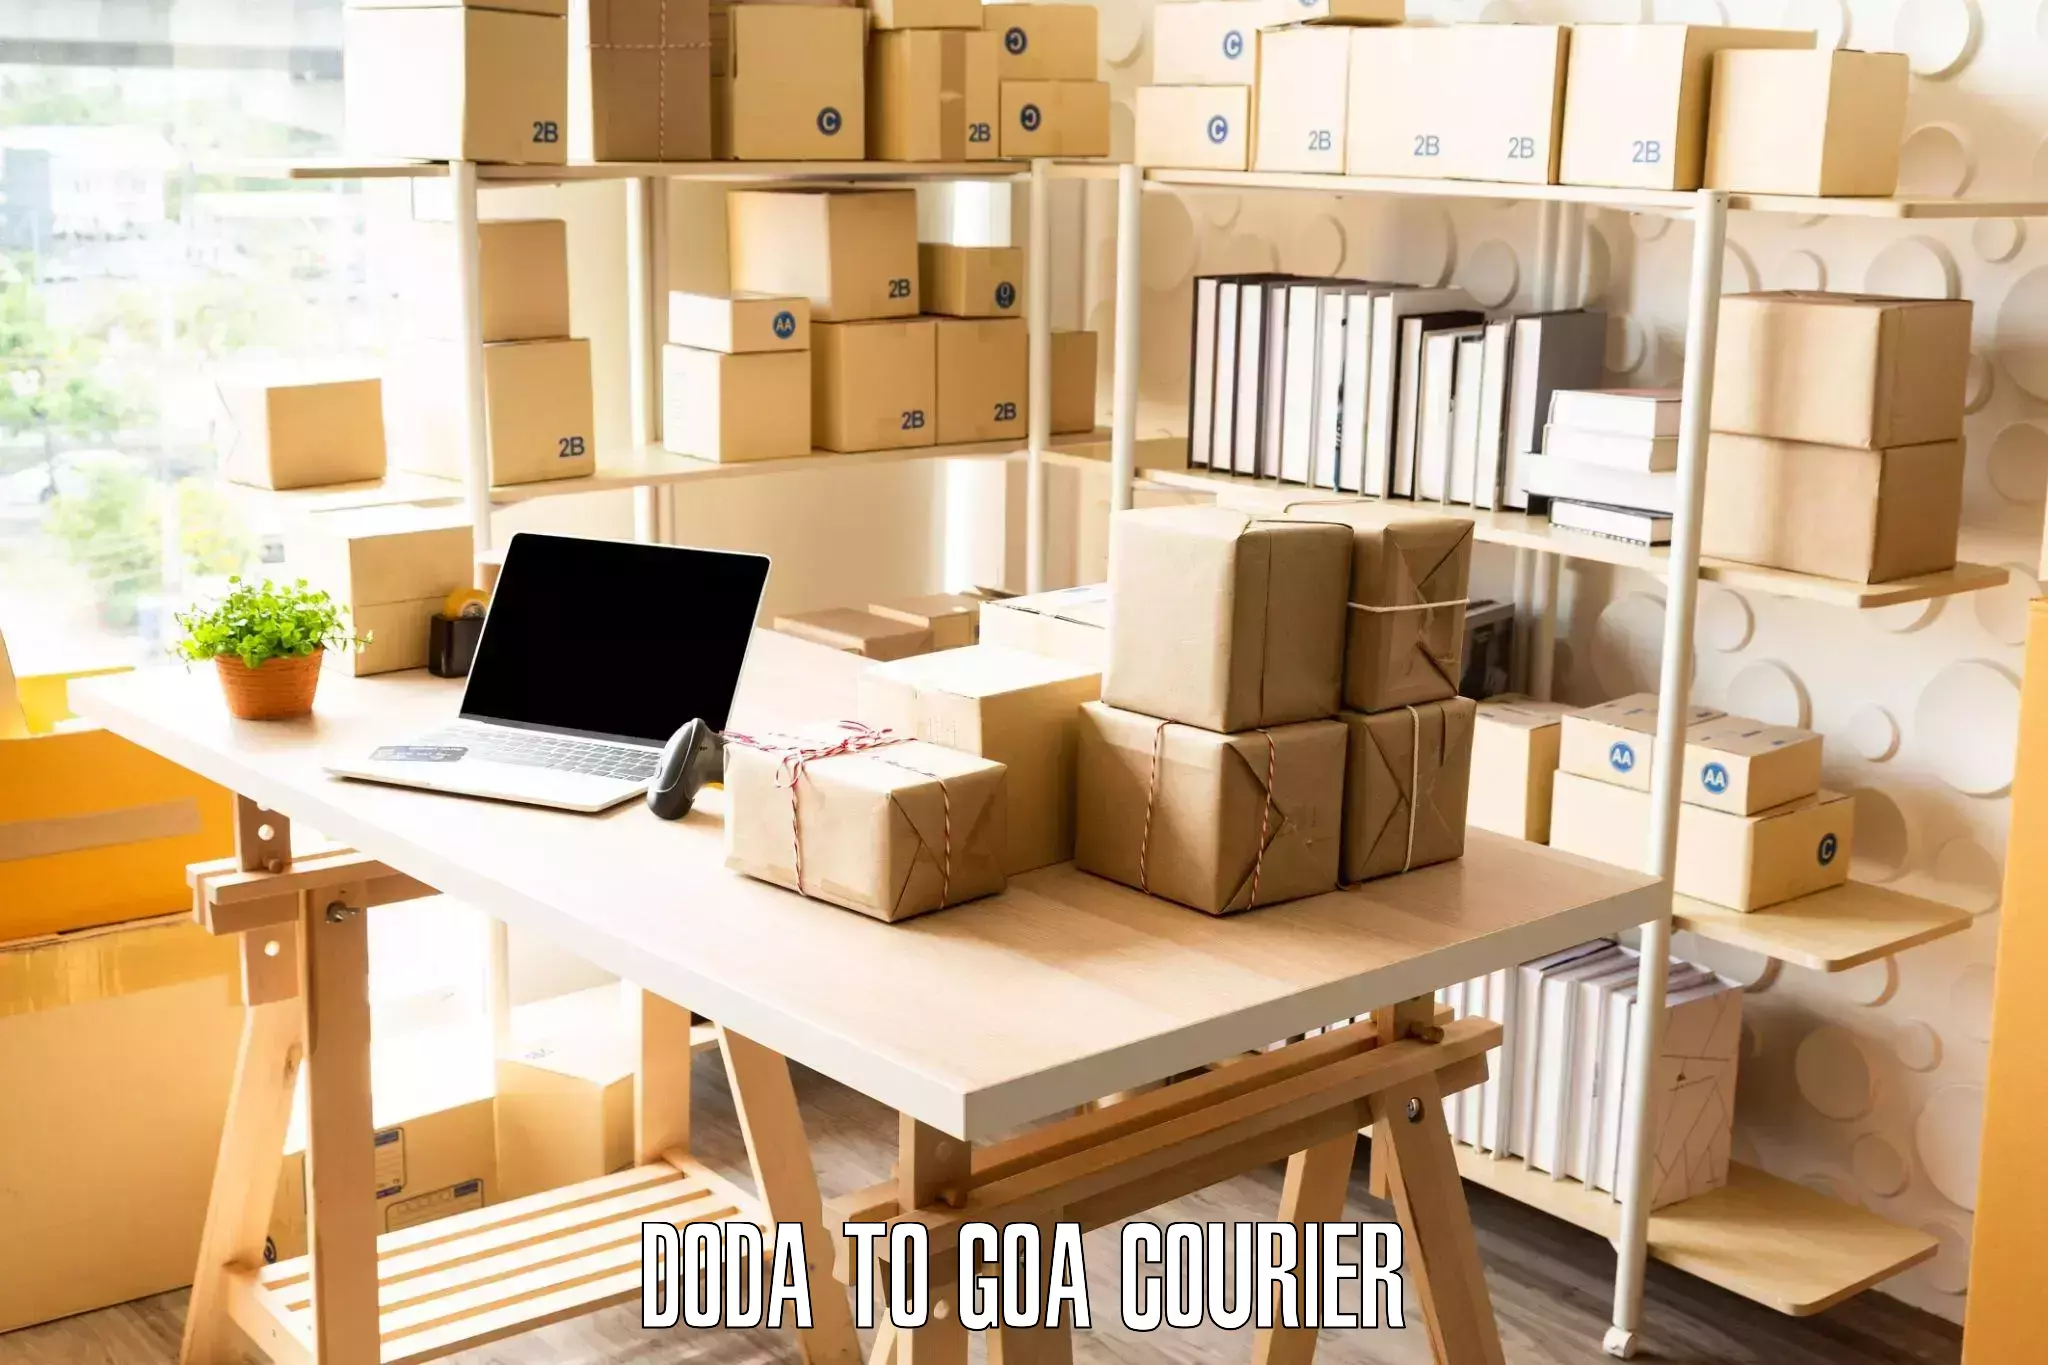 Premium moving services Doda to Goa